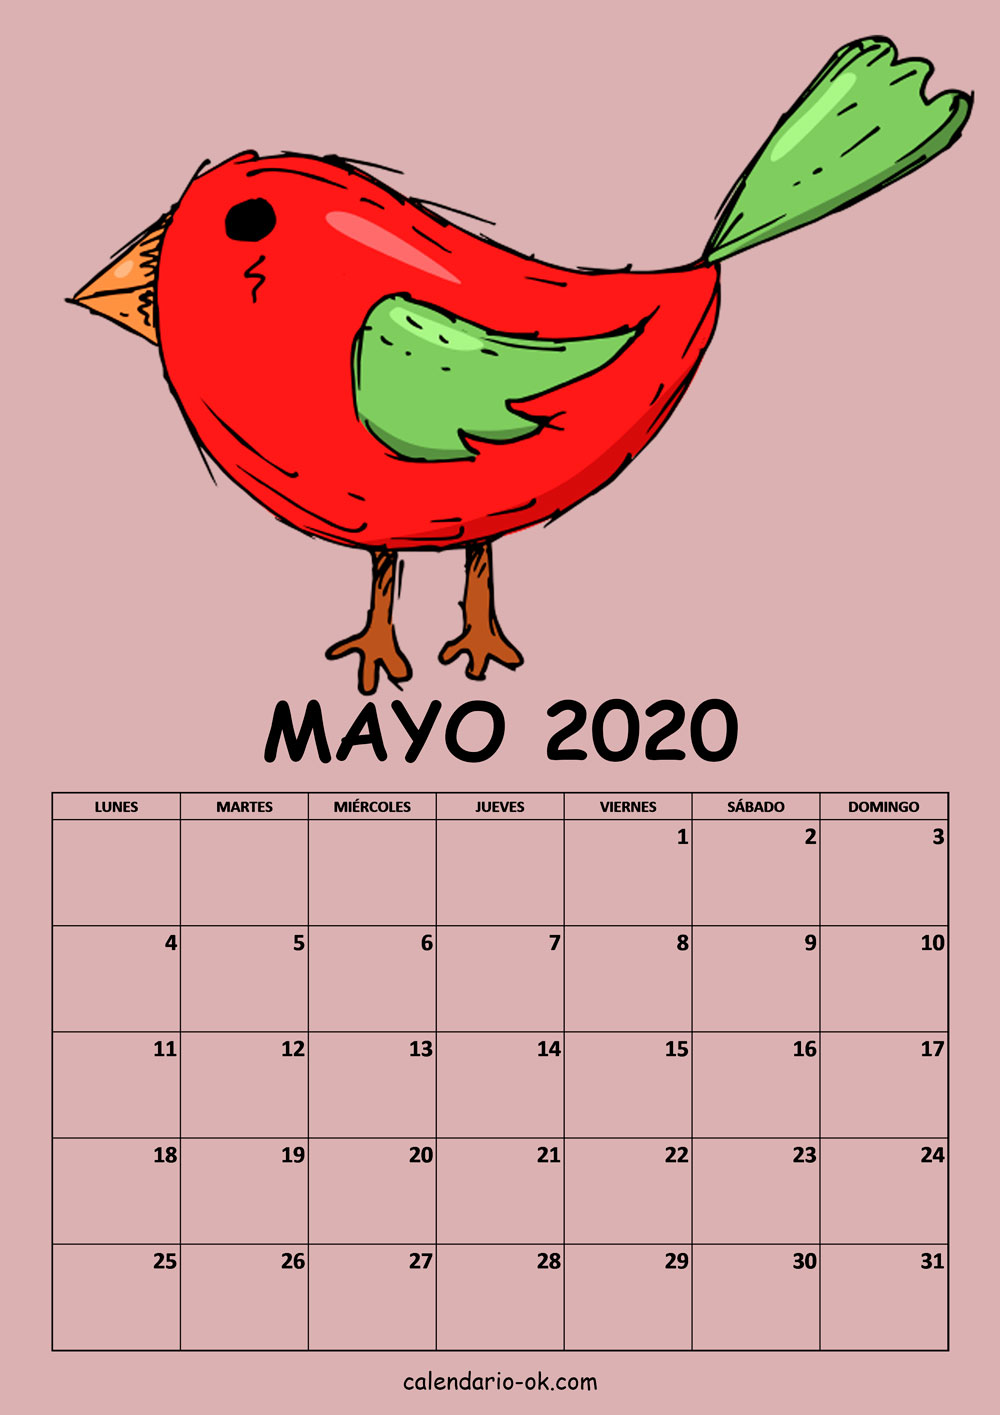 Calendario MAYO 2020 DIBUJO PAJAROS